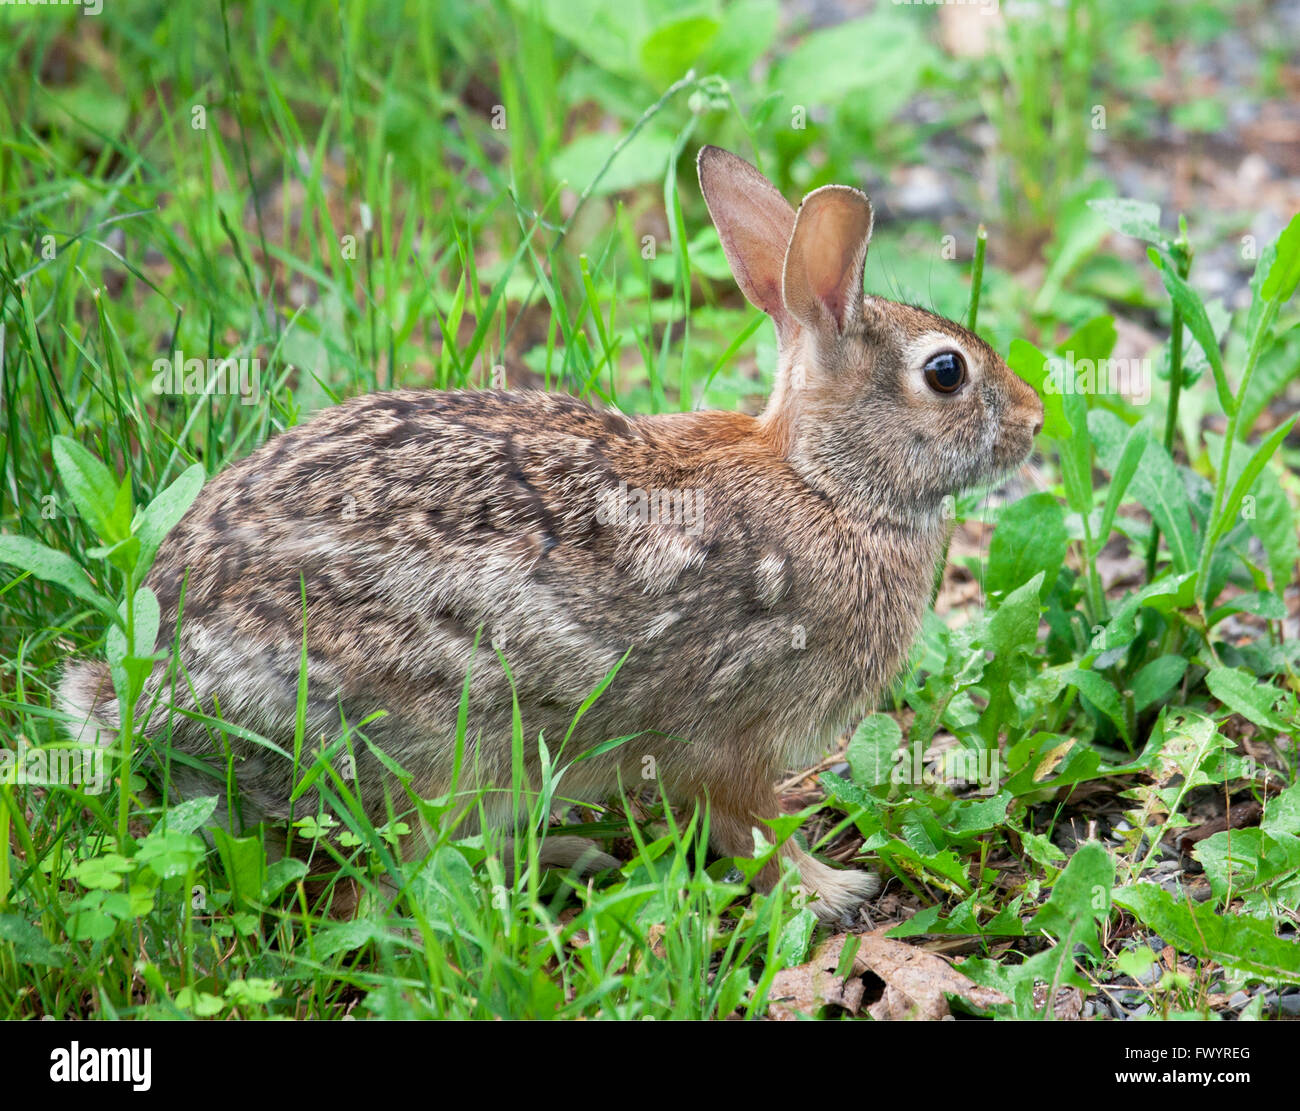 Cotton tail conejo sentado en Grassy parche Foto de stock